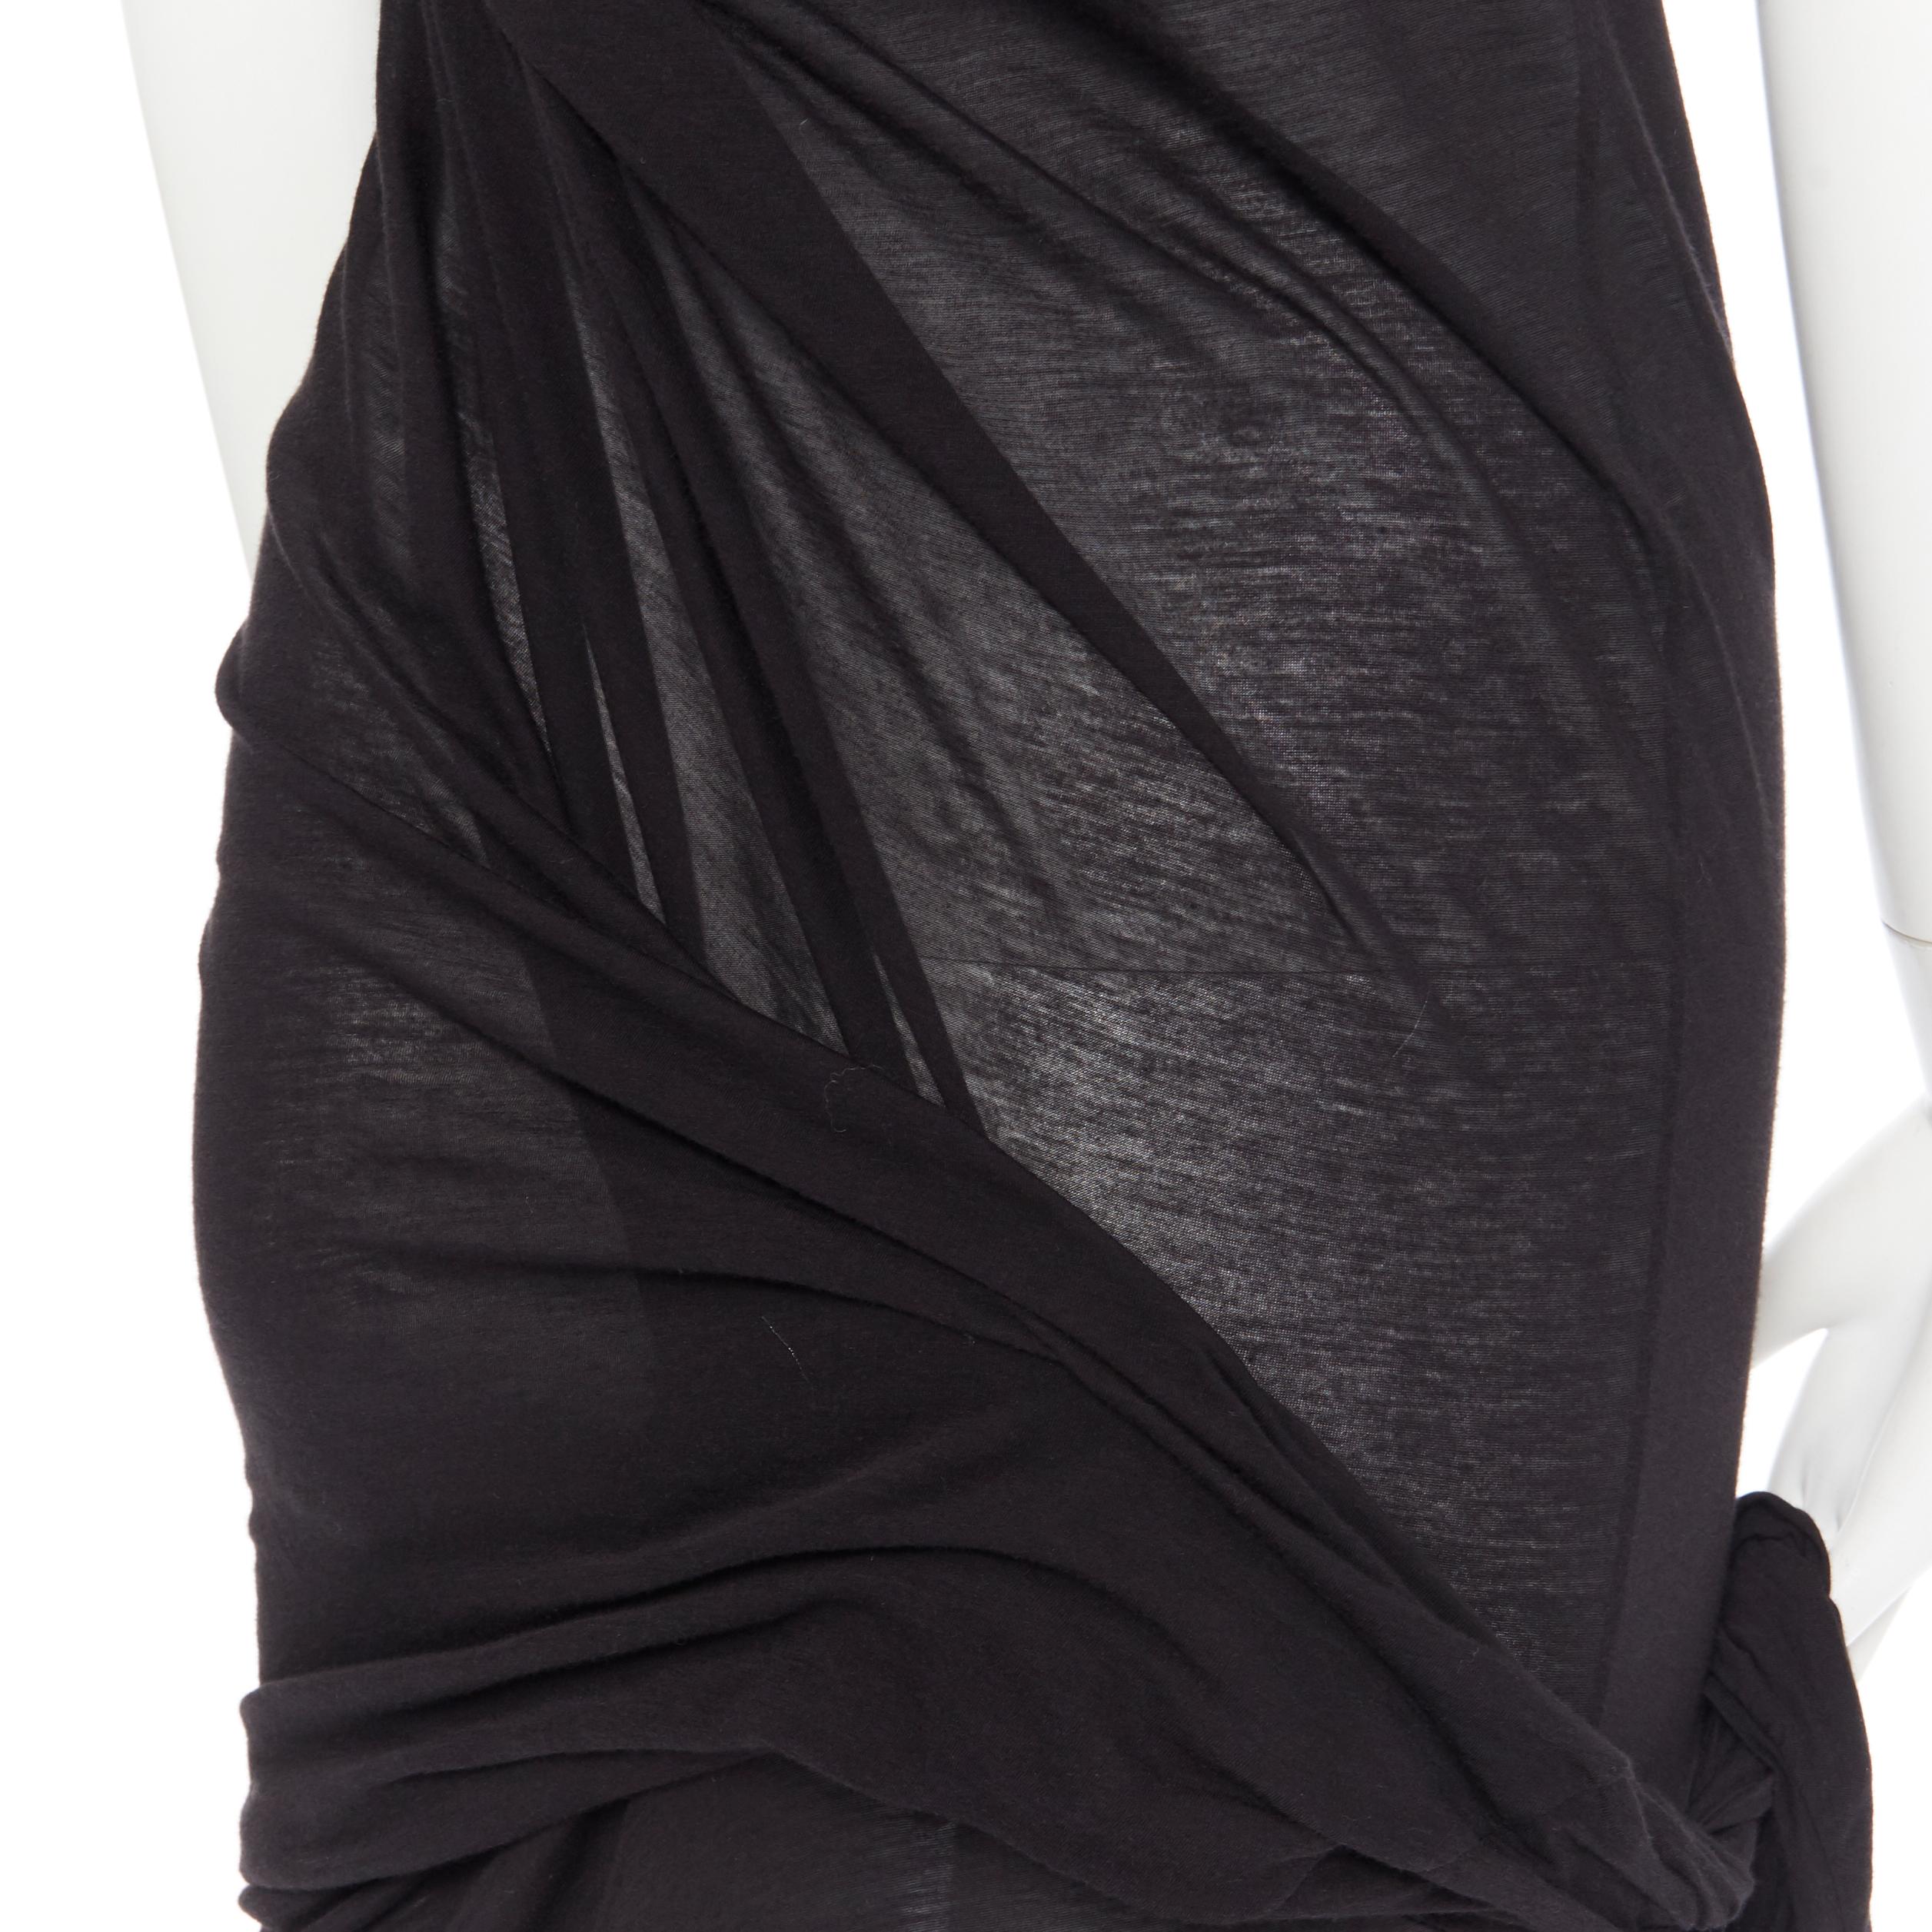 new DRKSHDW RICK OWENS black cotton jersey tie knot drape bias maxi dress XS 4